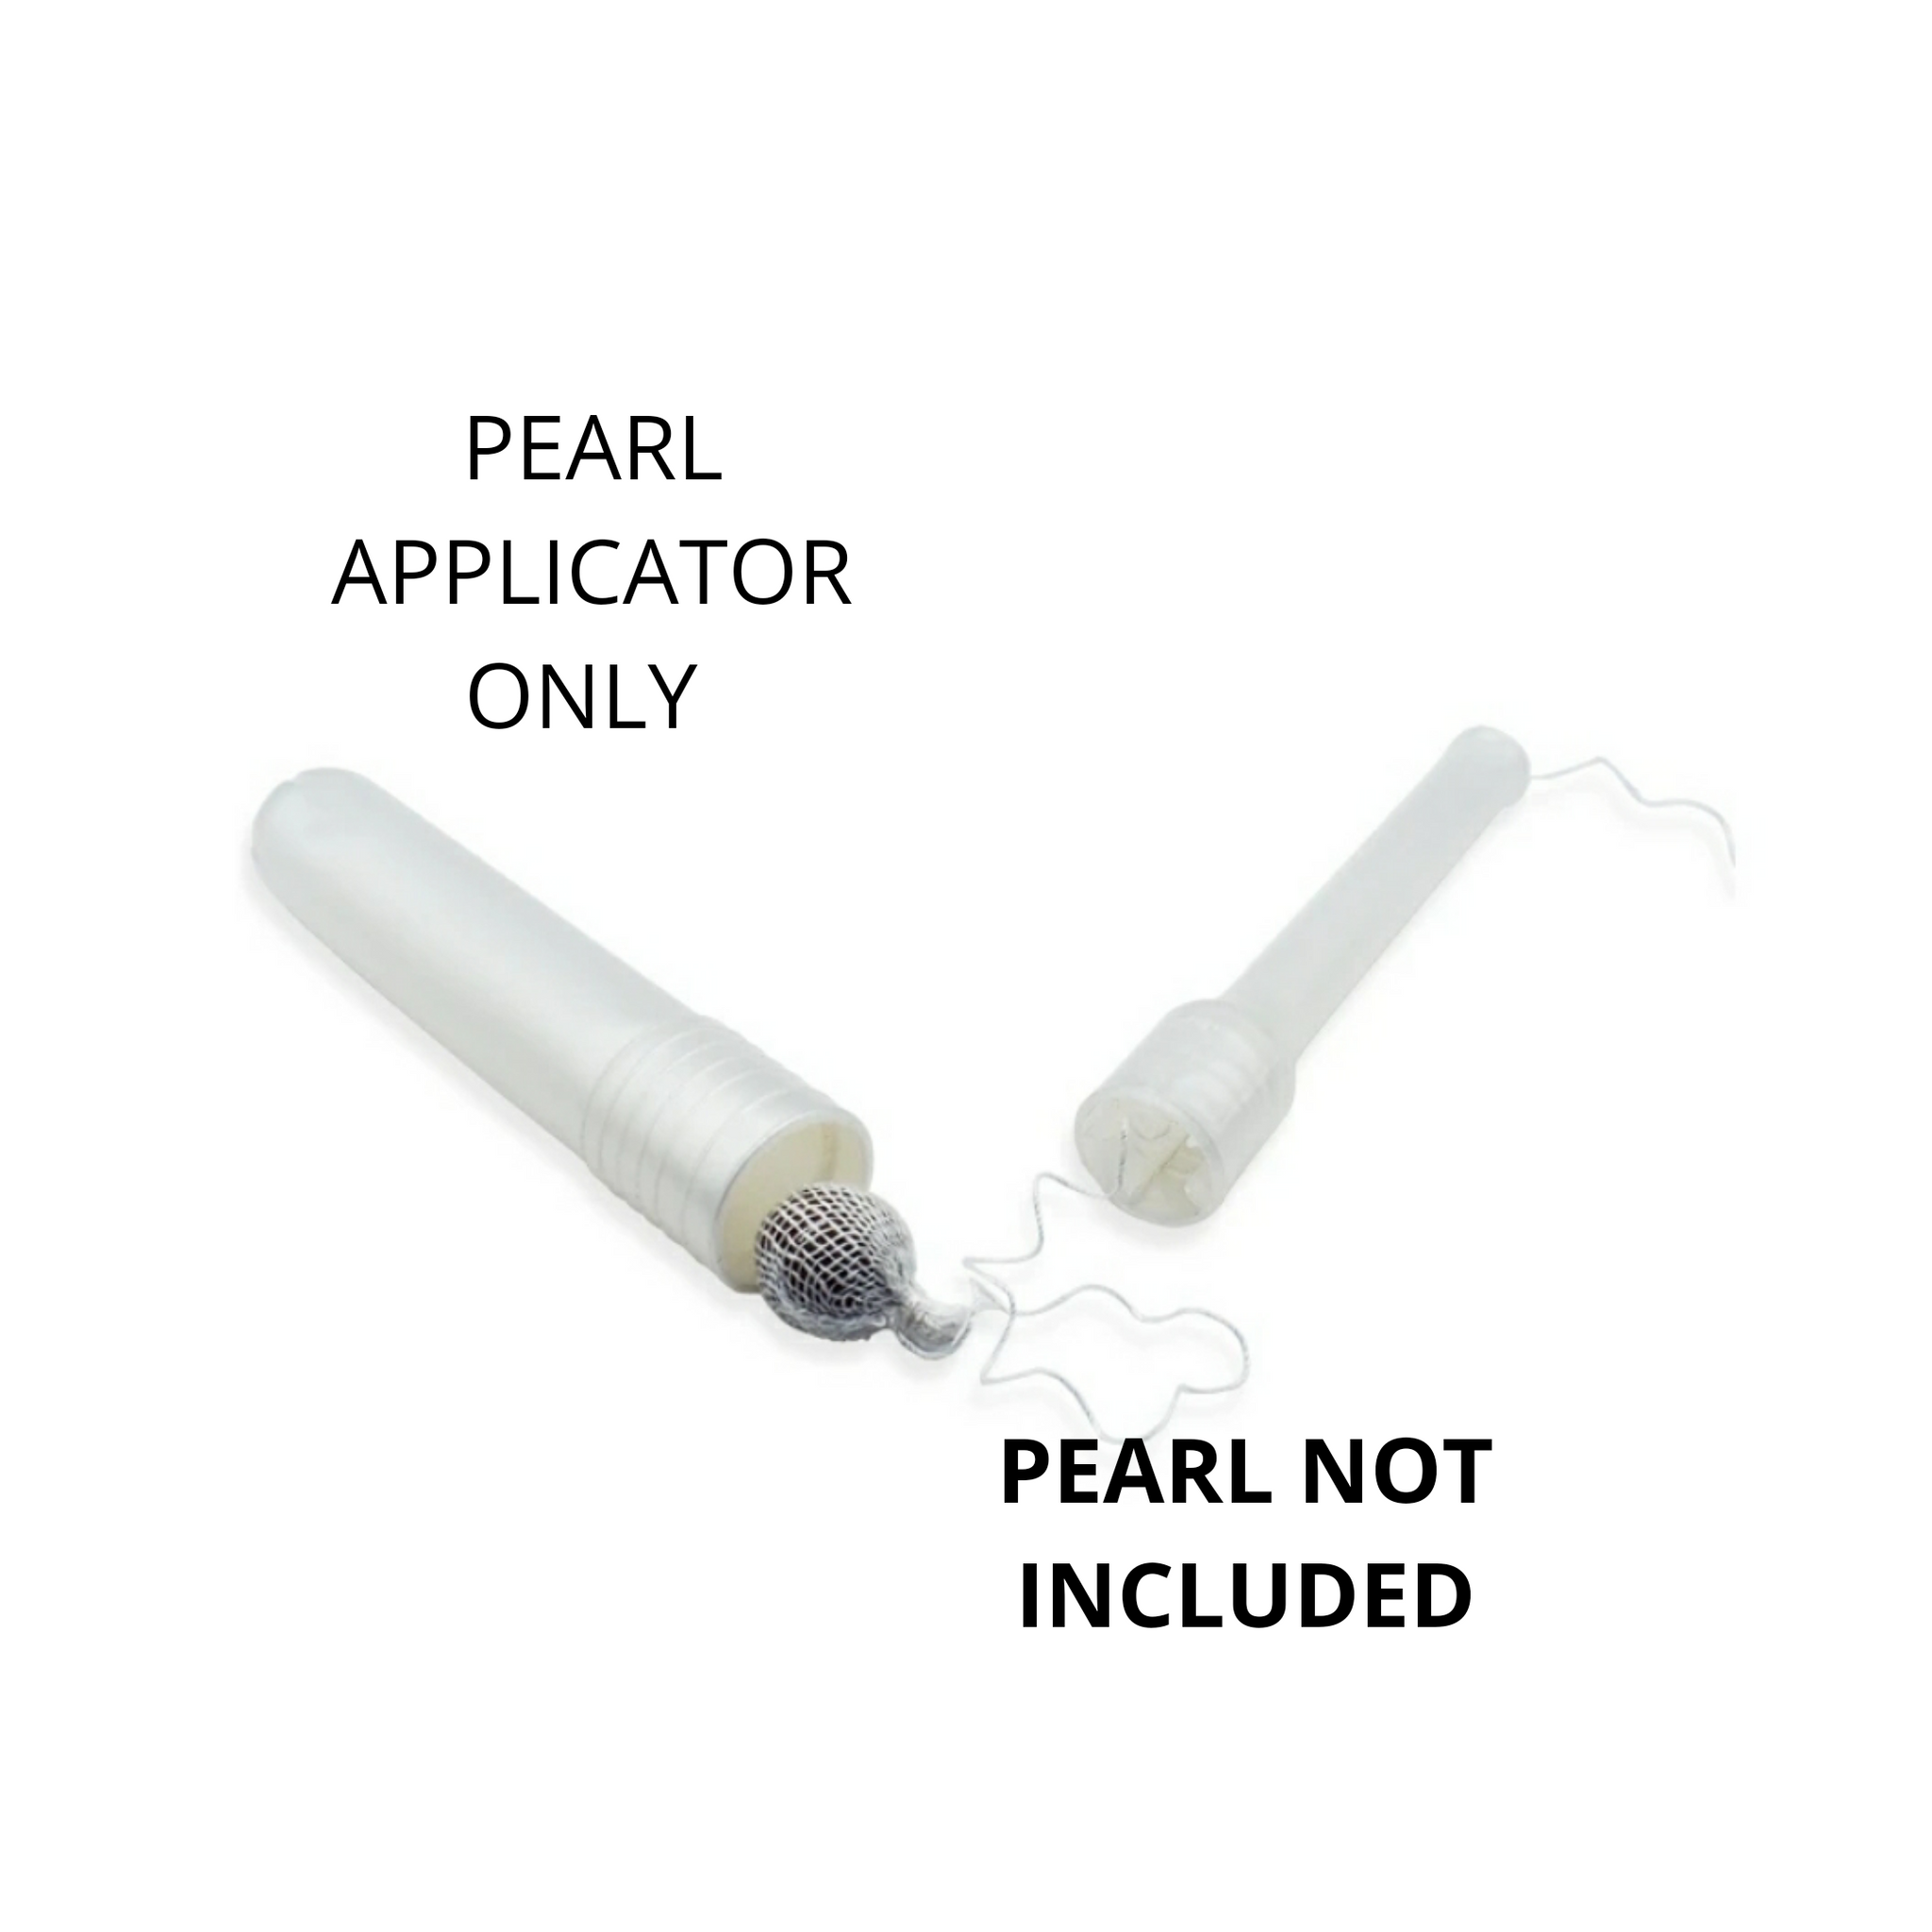 Pearl Applicator